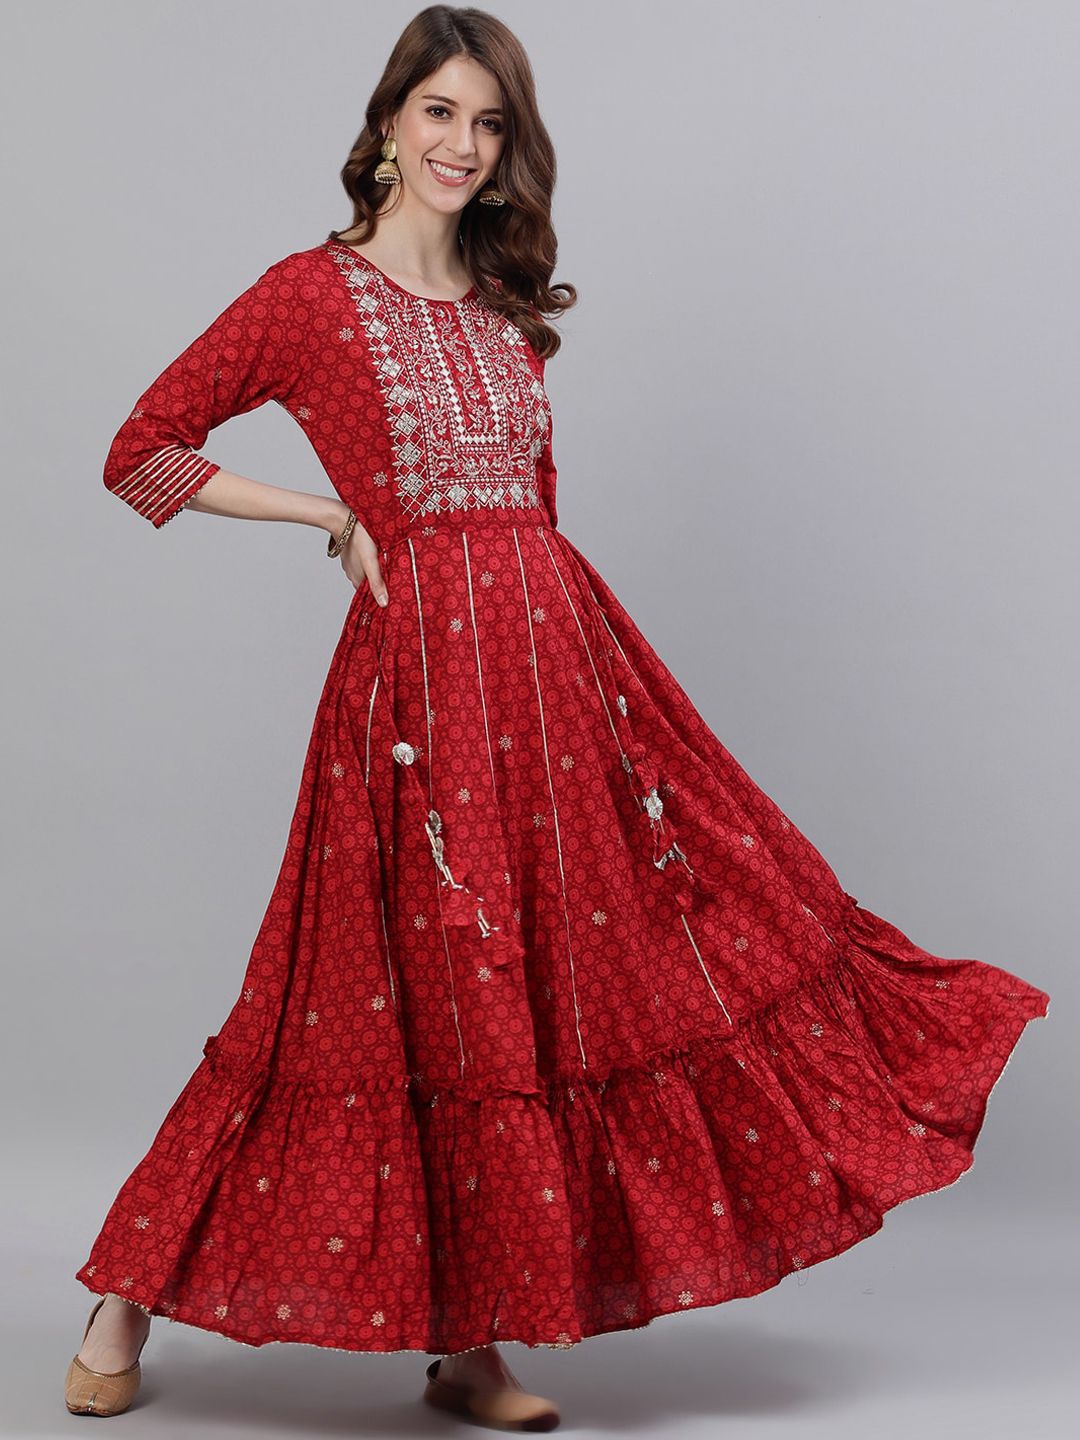 Ishin Red Ethnic Motifs Ethnic Maxi Dress Price in India